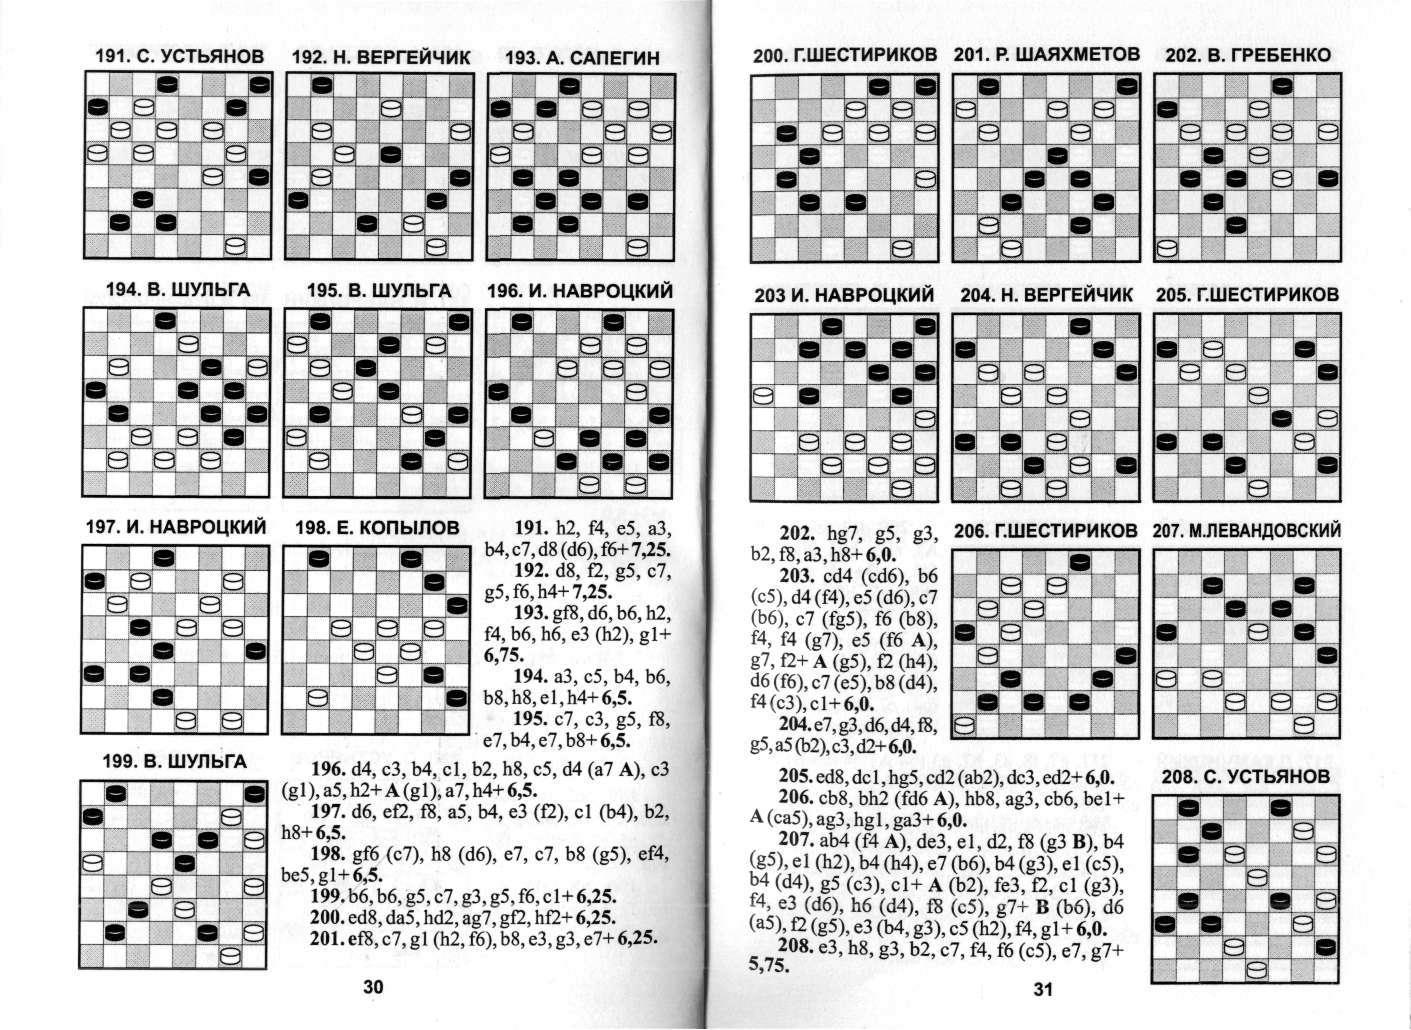 КОГОТЬКО_По следам шашечной композиции_page-0016.jpg